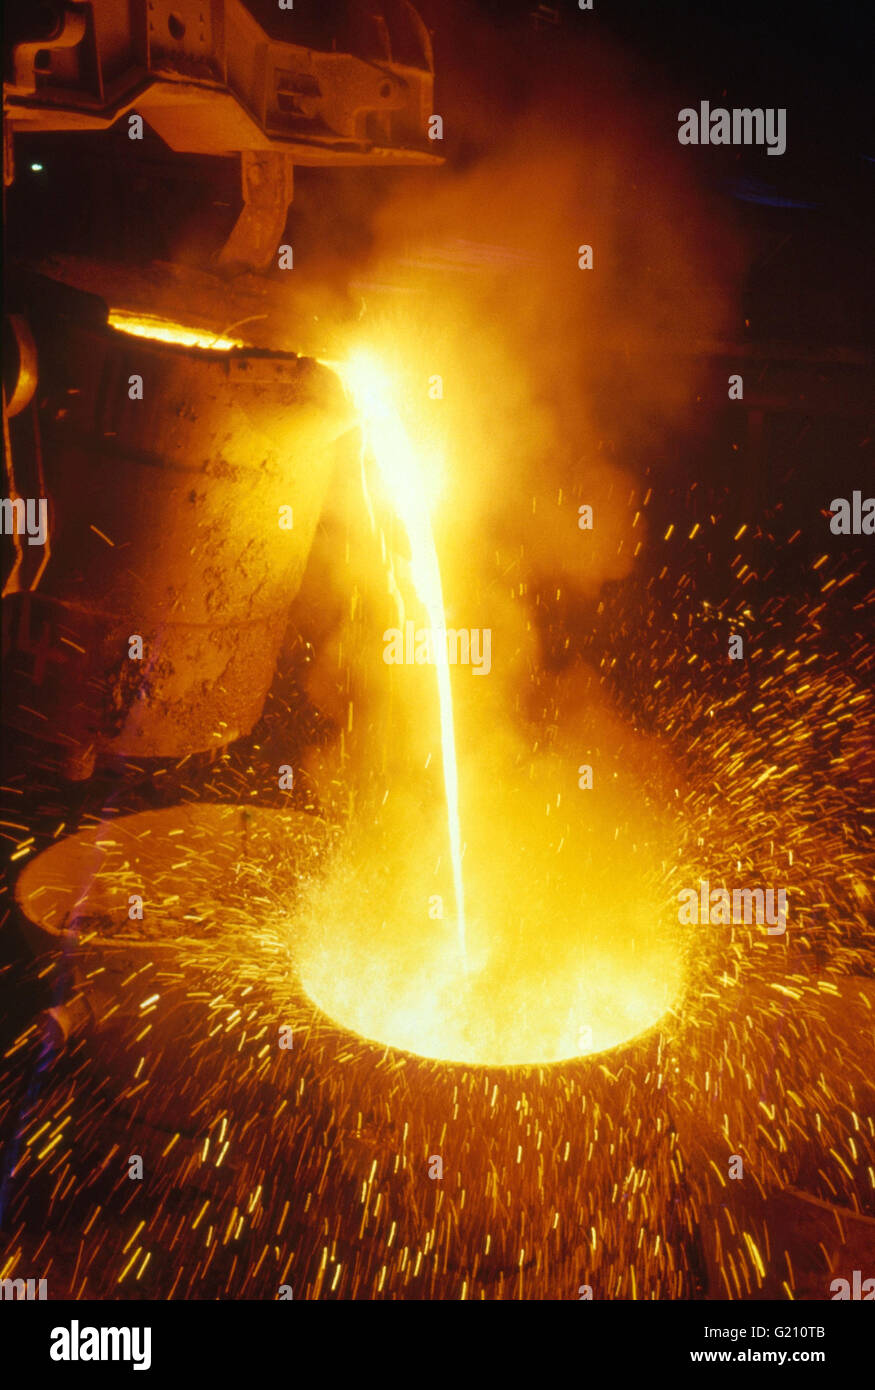 Stahlschmelze wird gegossen wird, verursacht eine Dusche der Funken in einem deutschen Stahlwerk ausbrechen. Stockfoto